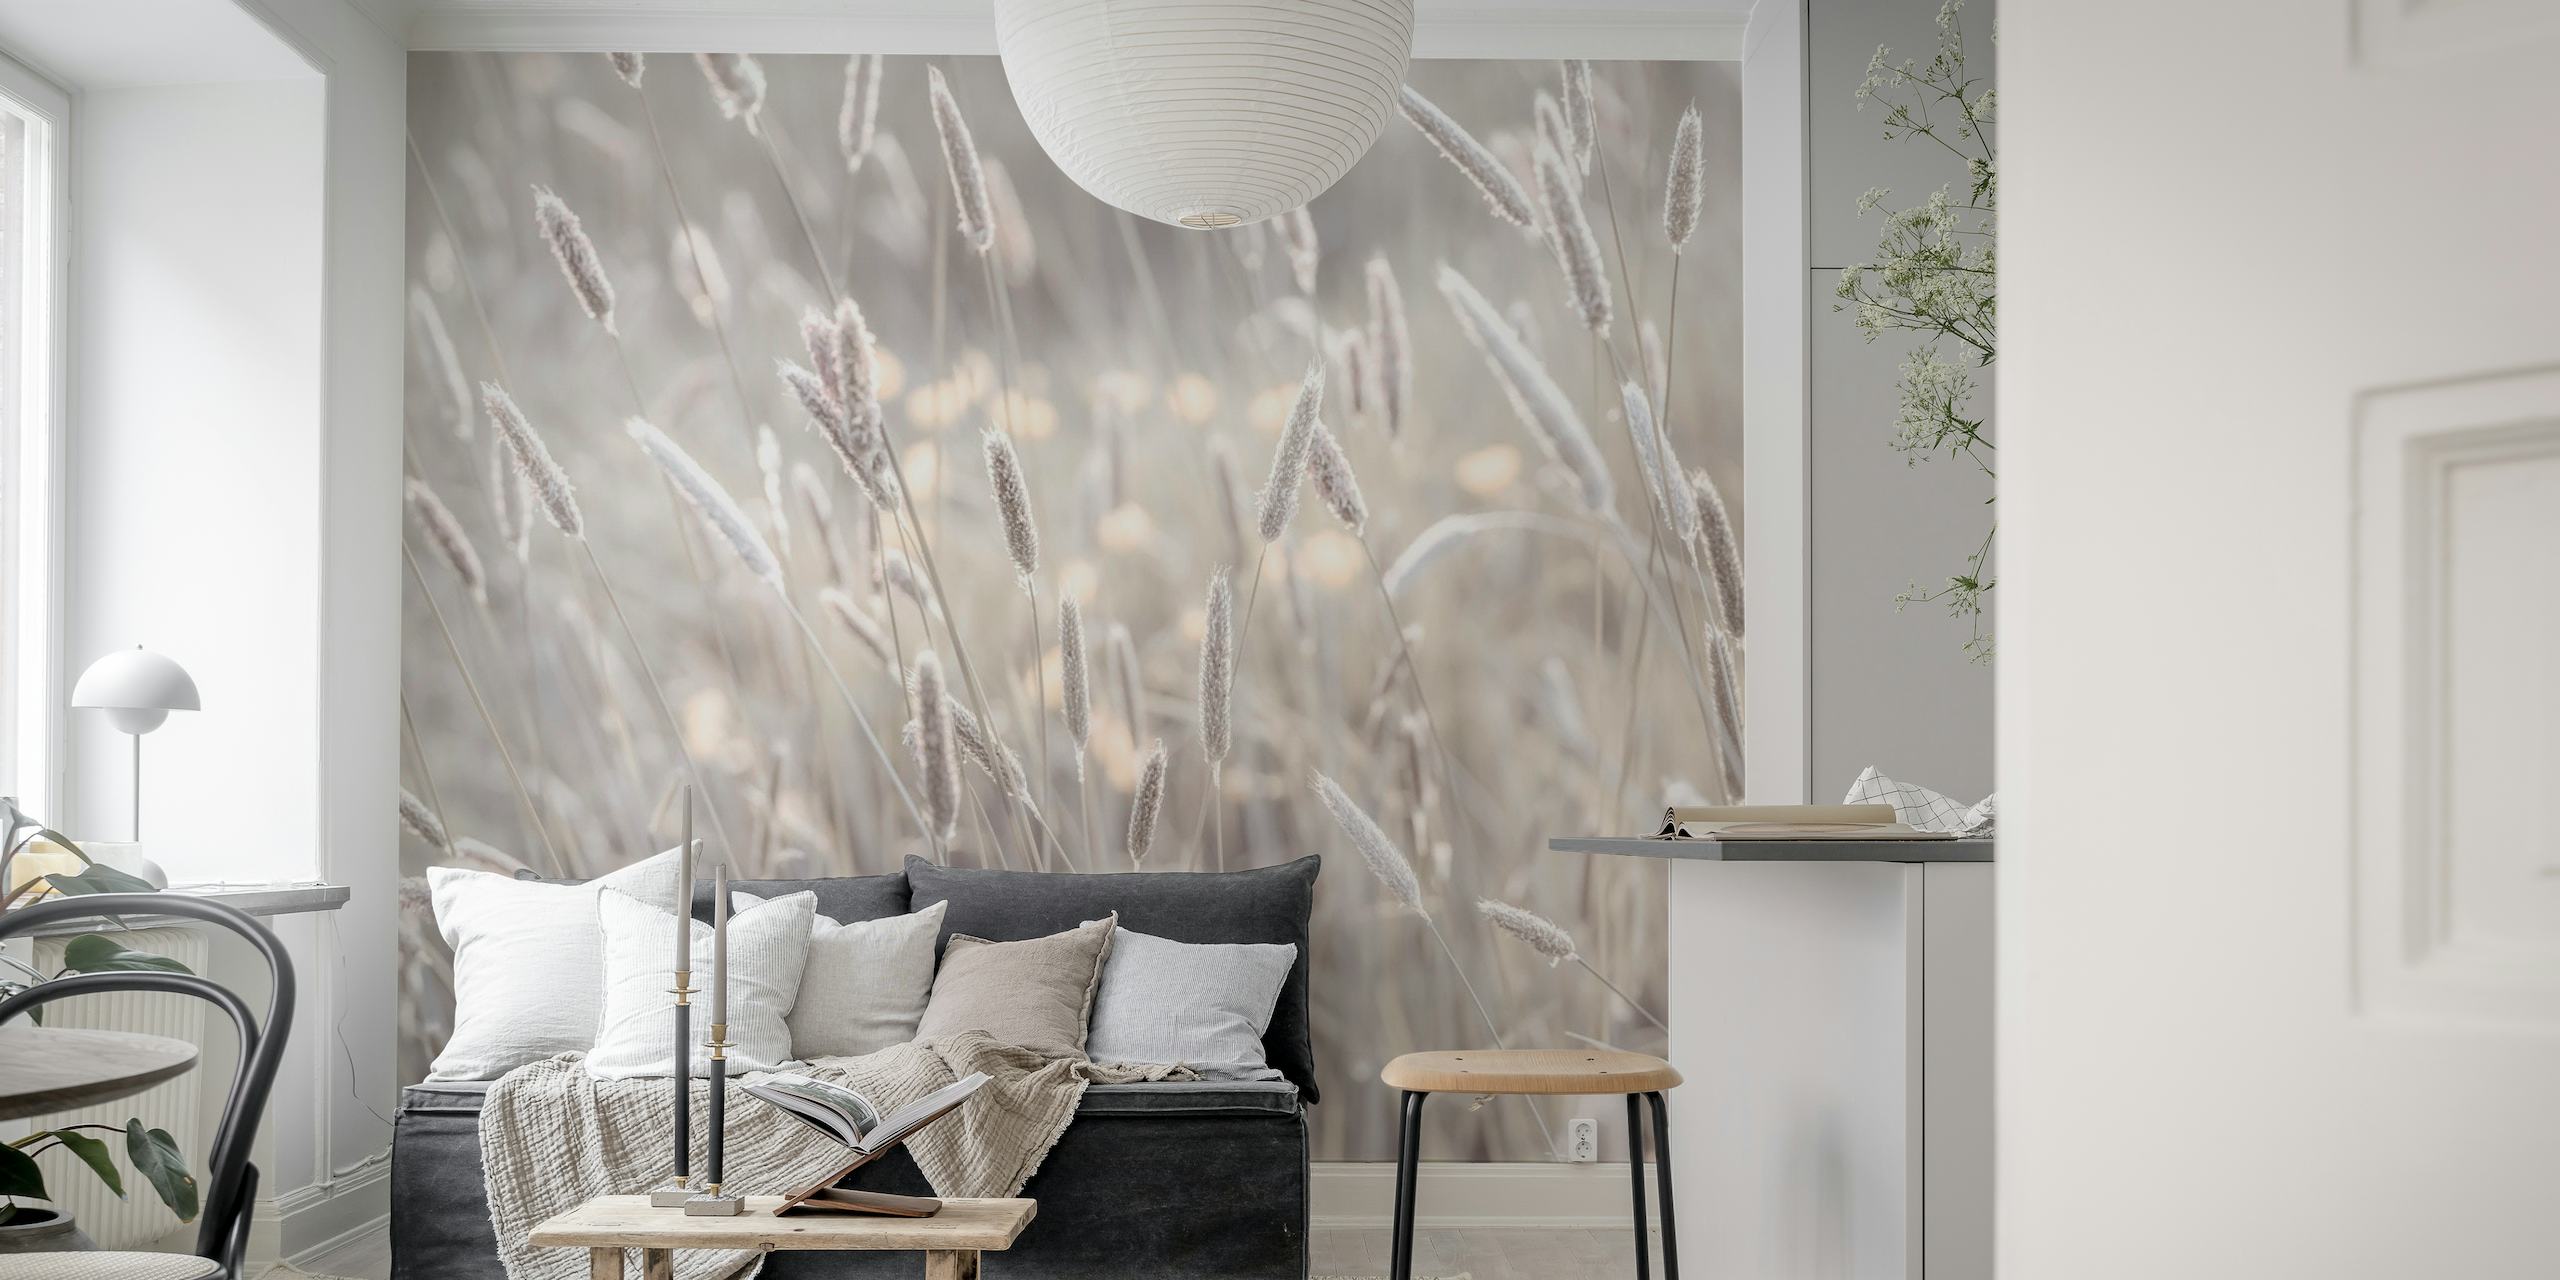 Mural de pared Meadow's Bliss con suaves tonos grises y blanquecinos, que muestra imágenes serenas de la pradera